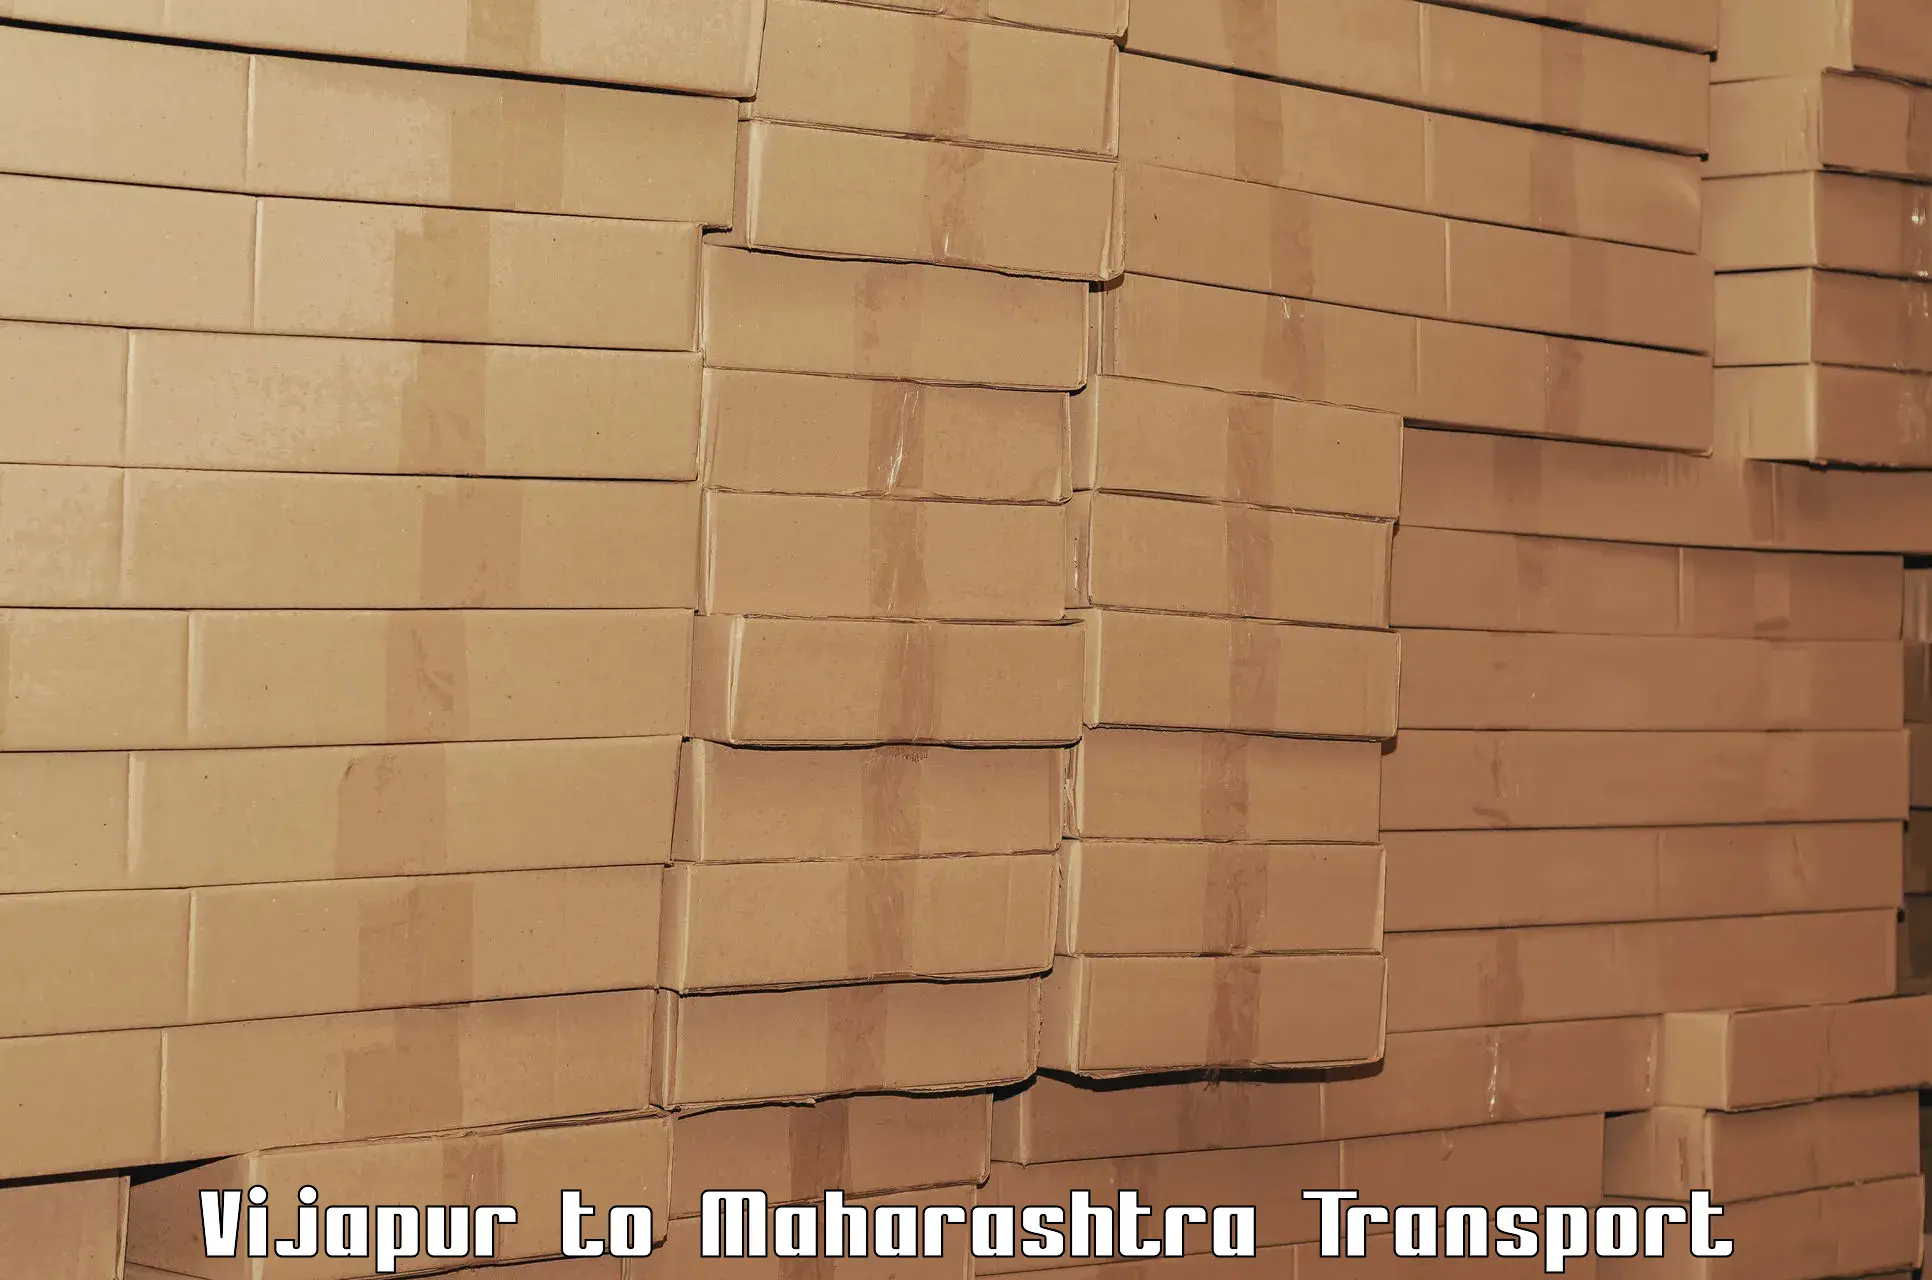 Luggage transport services Vijapur to Daryapur